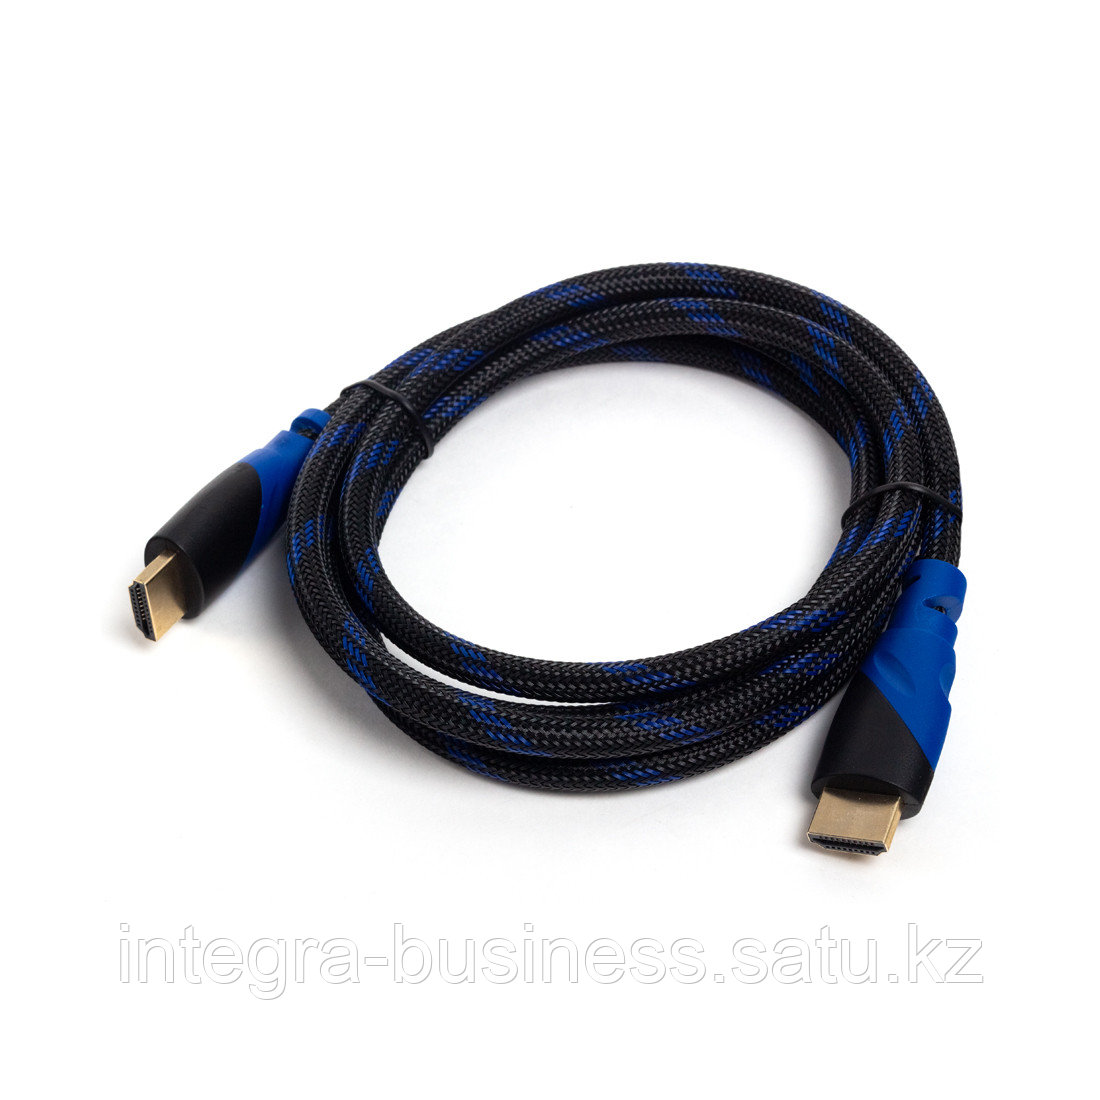 Интерфейсный кабель HDMI-HDMI SVC HR0150BL-P, 30В, Синий, Пол. пакет, 1.5 м, фото 1